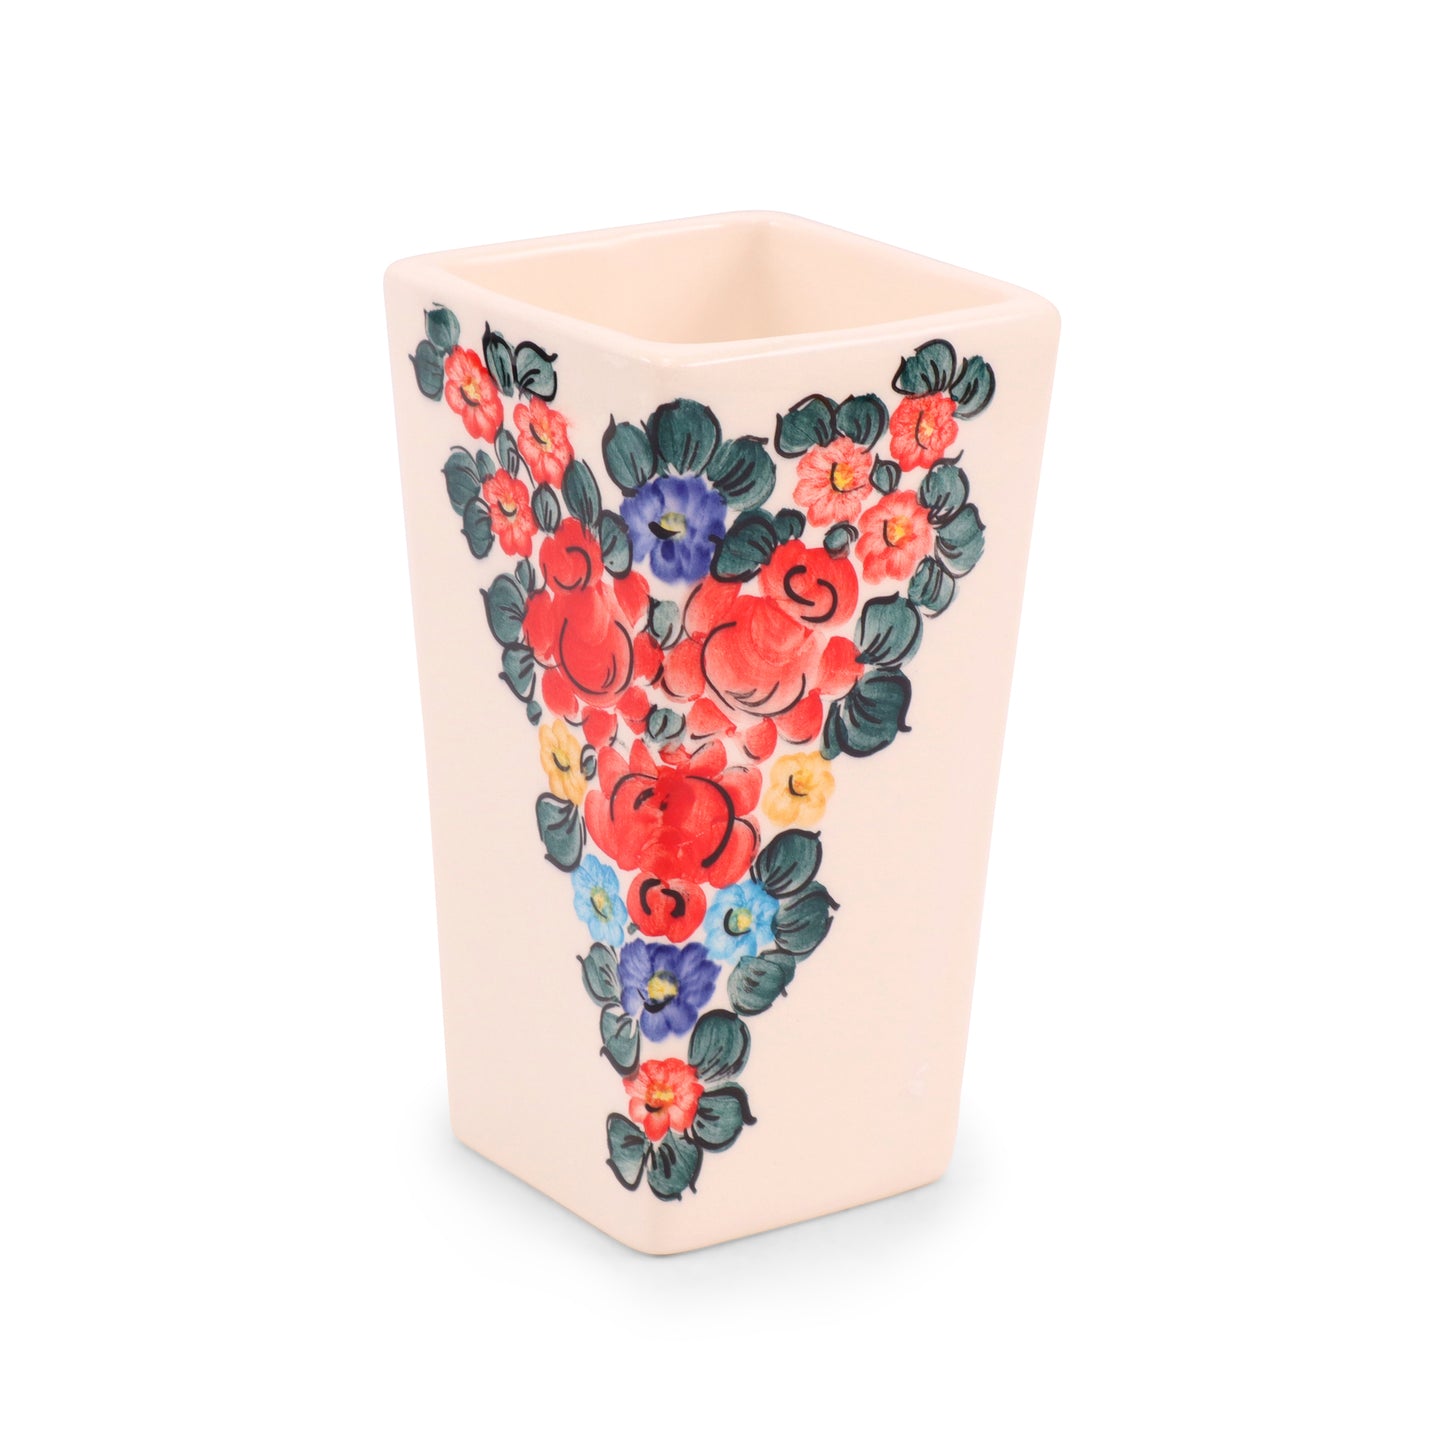 3"x6.5" Rectangular Vase. Pattern: Colorful